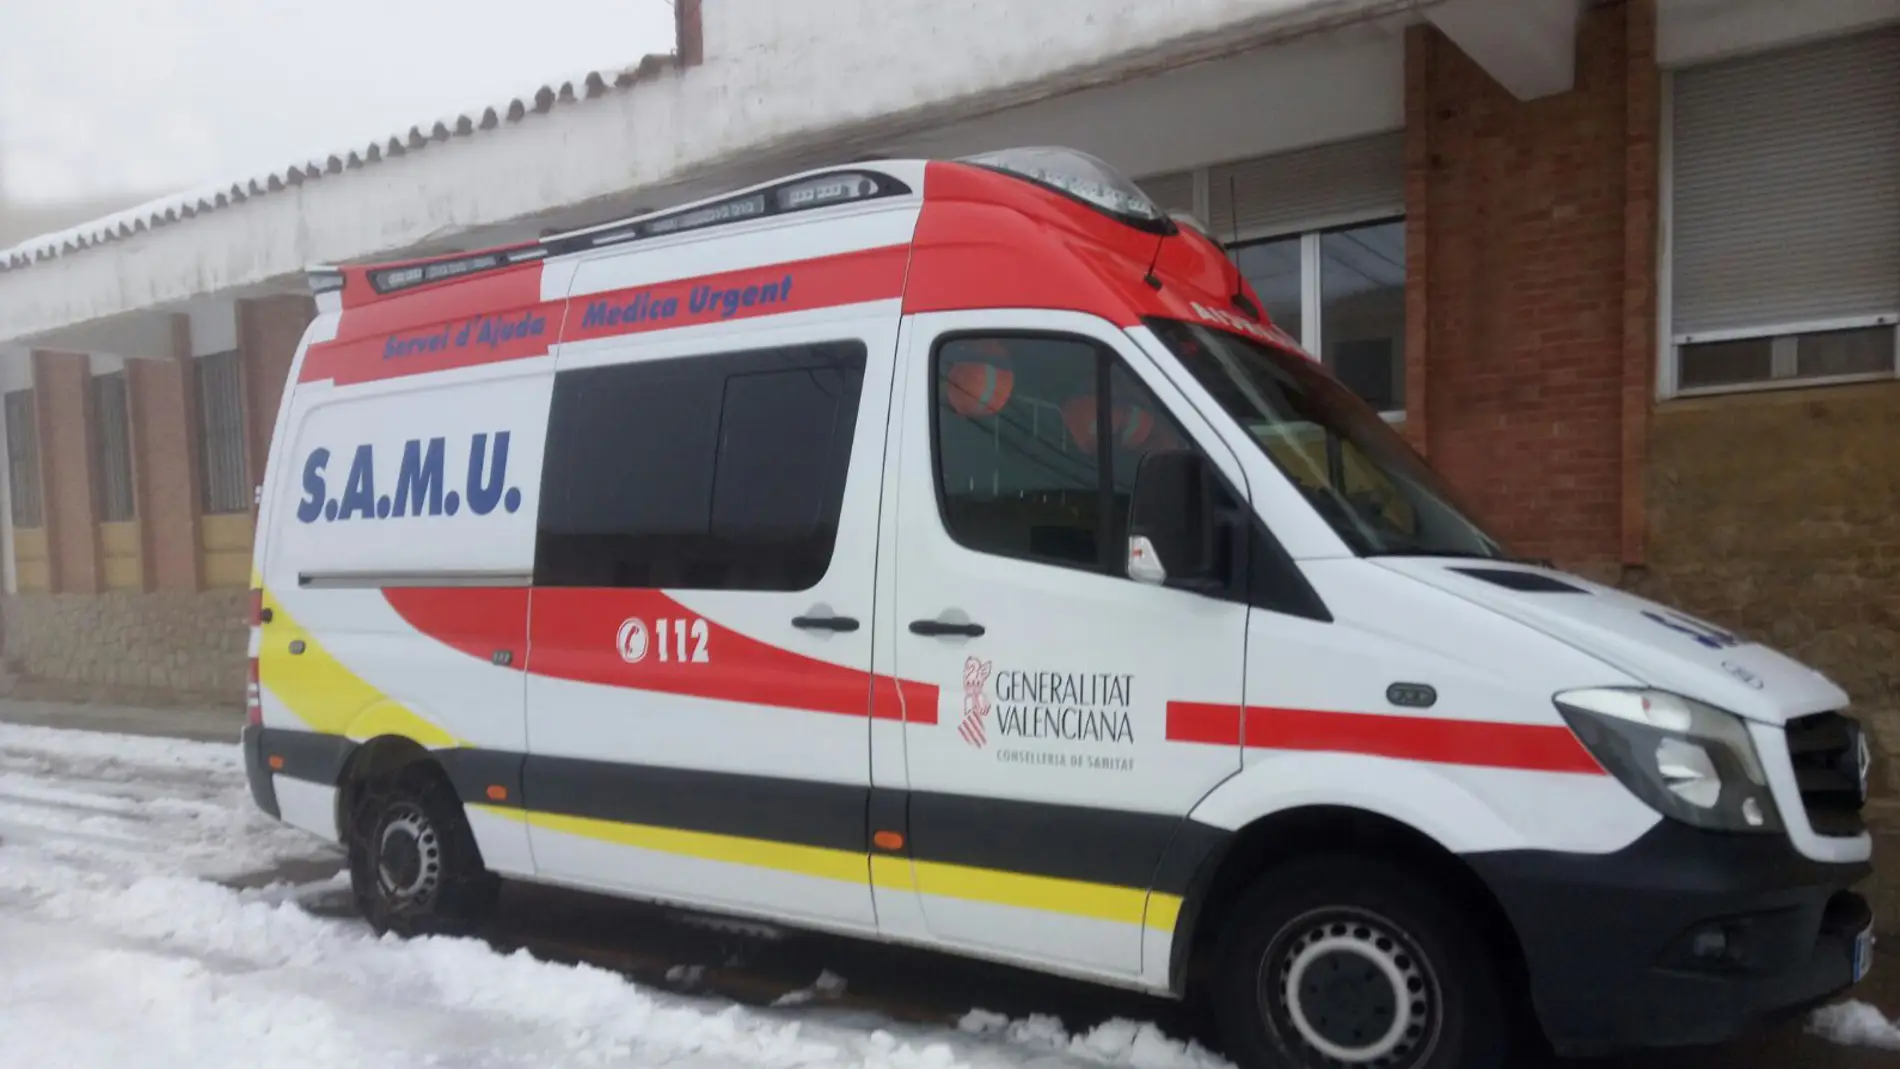 La Pobla de Benifassà, Vistabella y Montanejos continúan sin vehículo sanitario 4x4